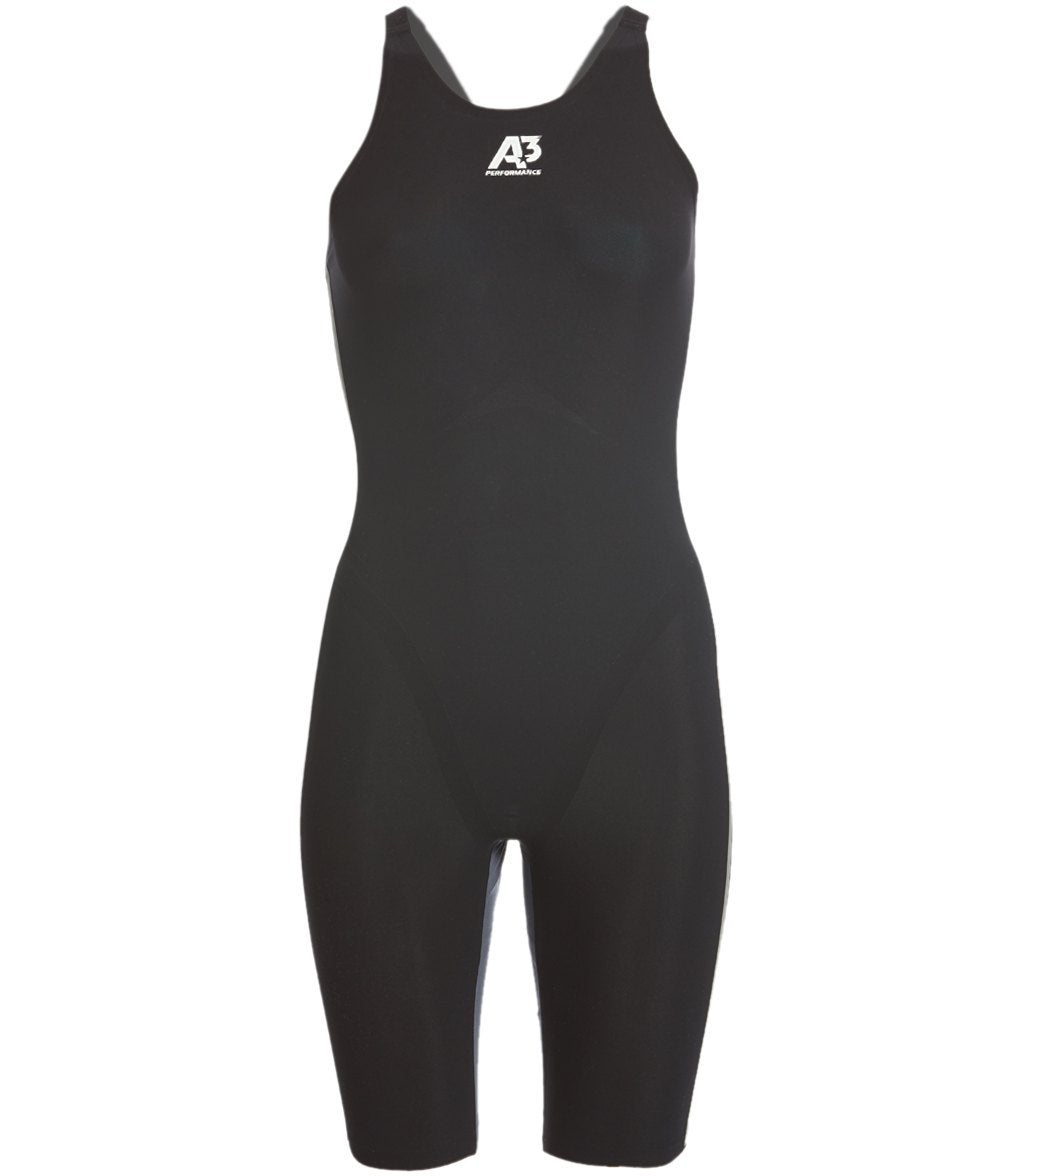 A3 Performance Women's Vici Closed Back Tech Suit Swimsuit - Black 26 Elastane/Polyamide - Swimoutlet.com